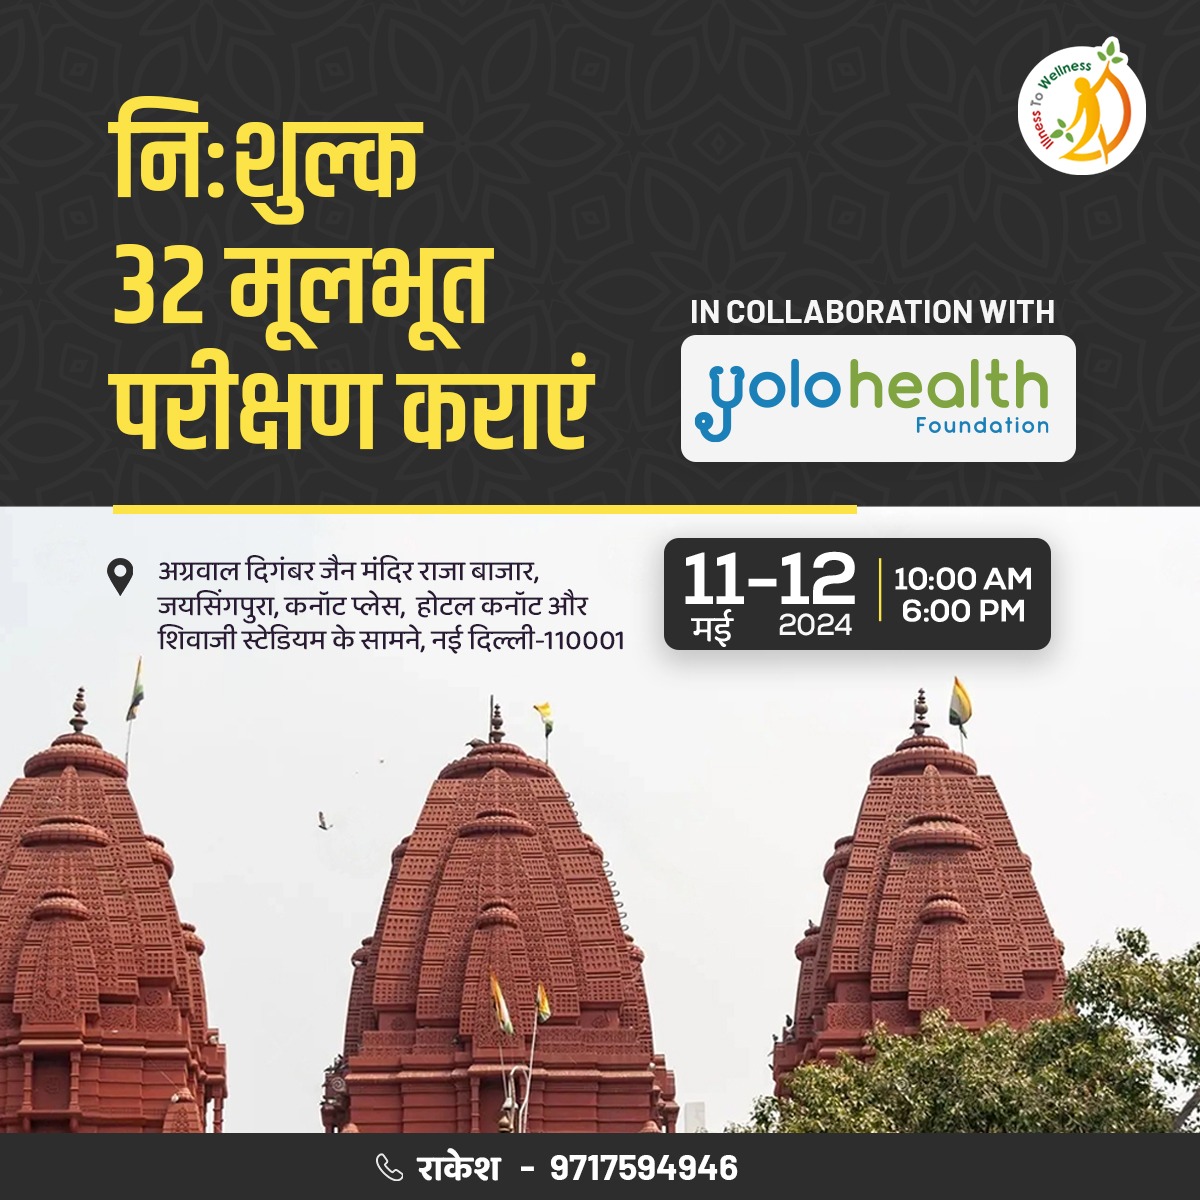 मुफ्त में 32 मूलभूत परीक्षण करवाएं! अग्रवाल दिगंबर जैन मंदिर, राजा बाजार, जयसिंगपुरा, कनॉट प्लेस, नई दिल्ली-110001, होटल कनॉट और शिवाजी स्टेडियम के सामने। तारीख: 11 मई और 12 मई 2024 समय: सुबह 10 बजे से शाम 6 बजे तक। राकेश 📞 9717594946 #IllnessToWellness #YoloHealth…